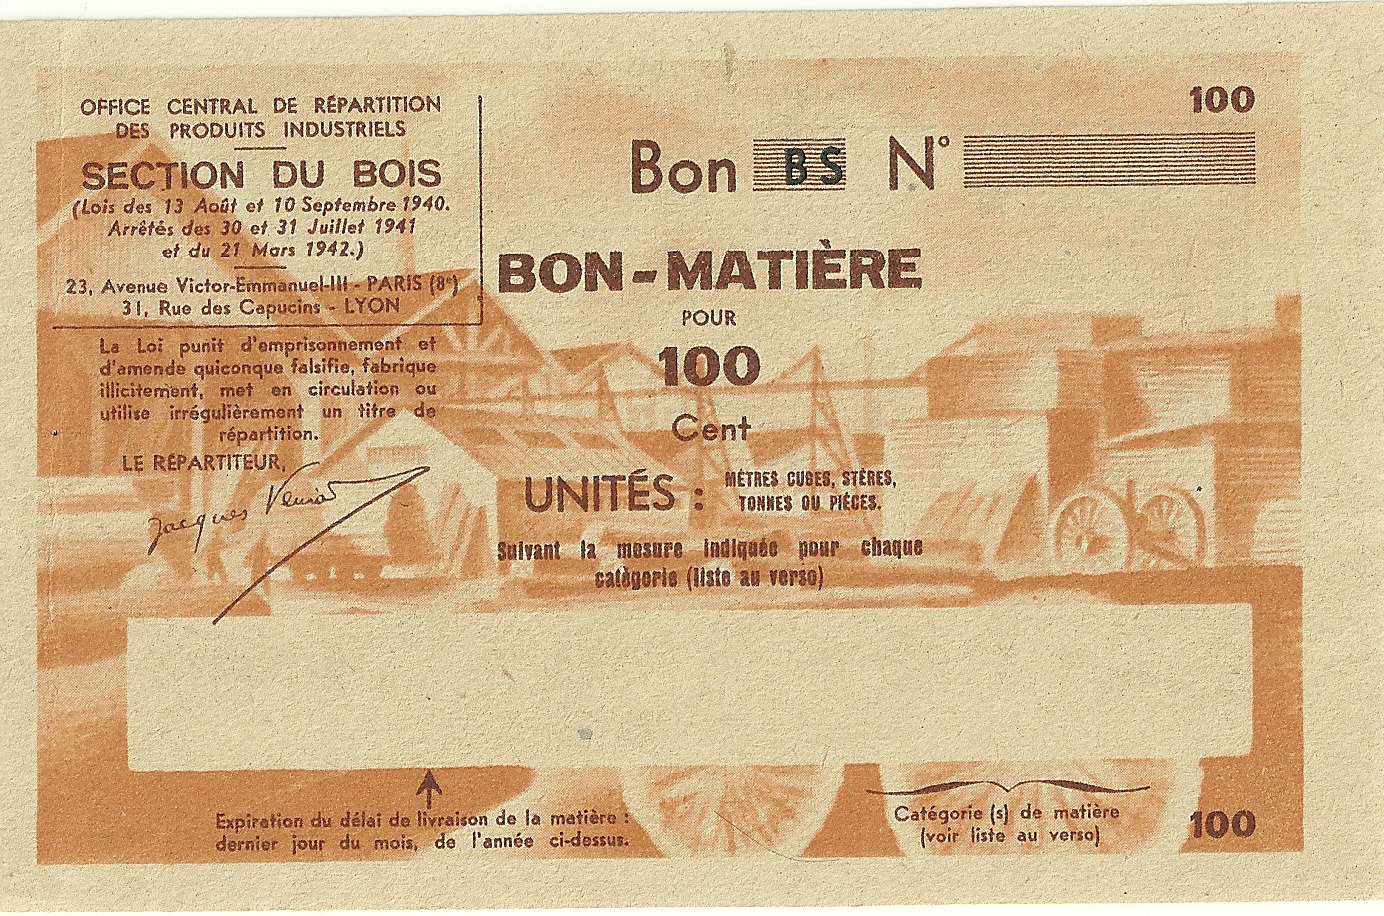 SECTION DU BOIS - Bon BS - BON-MATIERE POUR 100 Cent UNITES - S-NMR